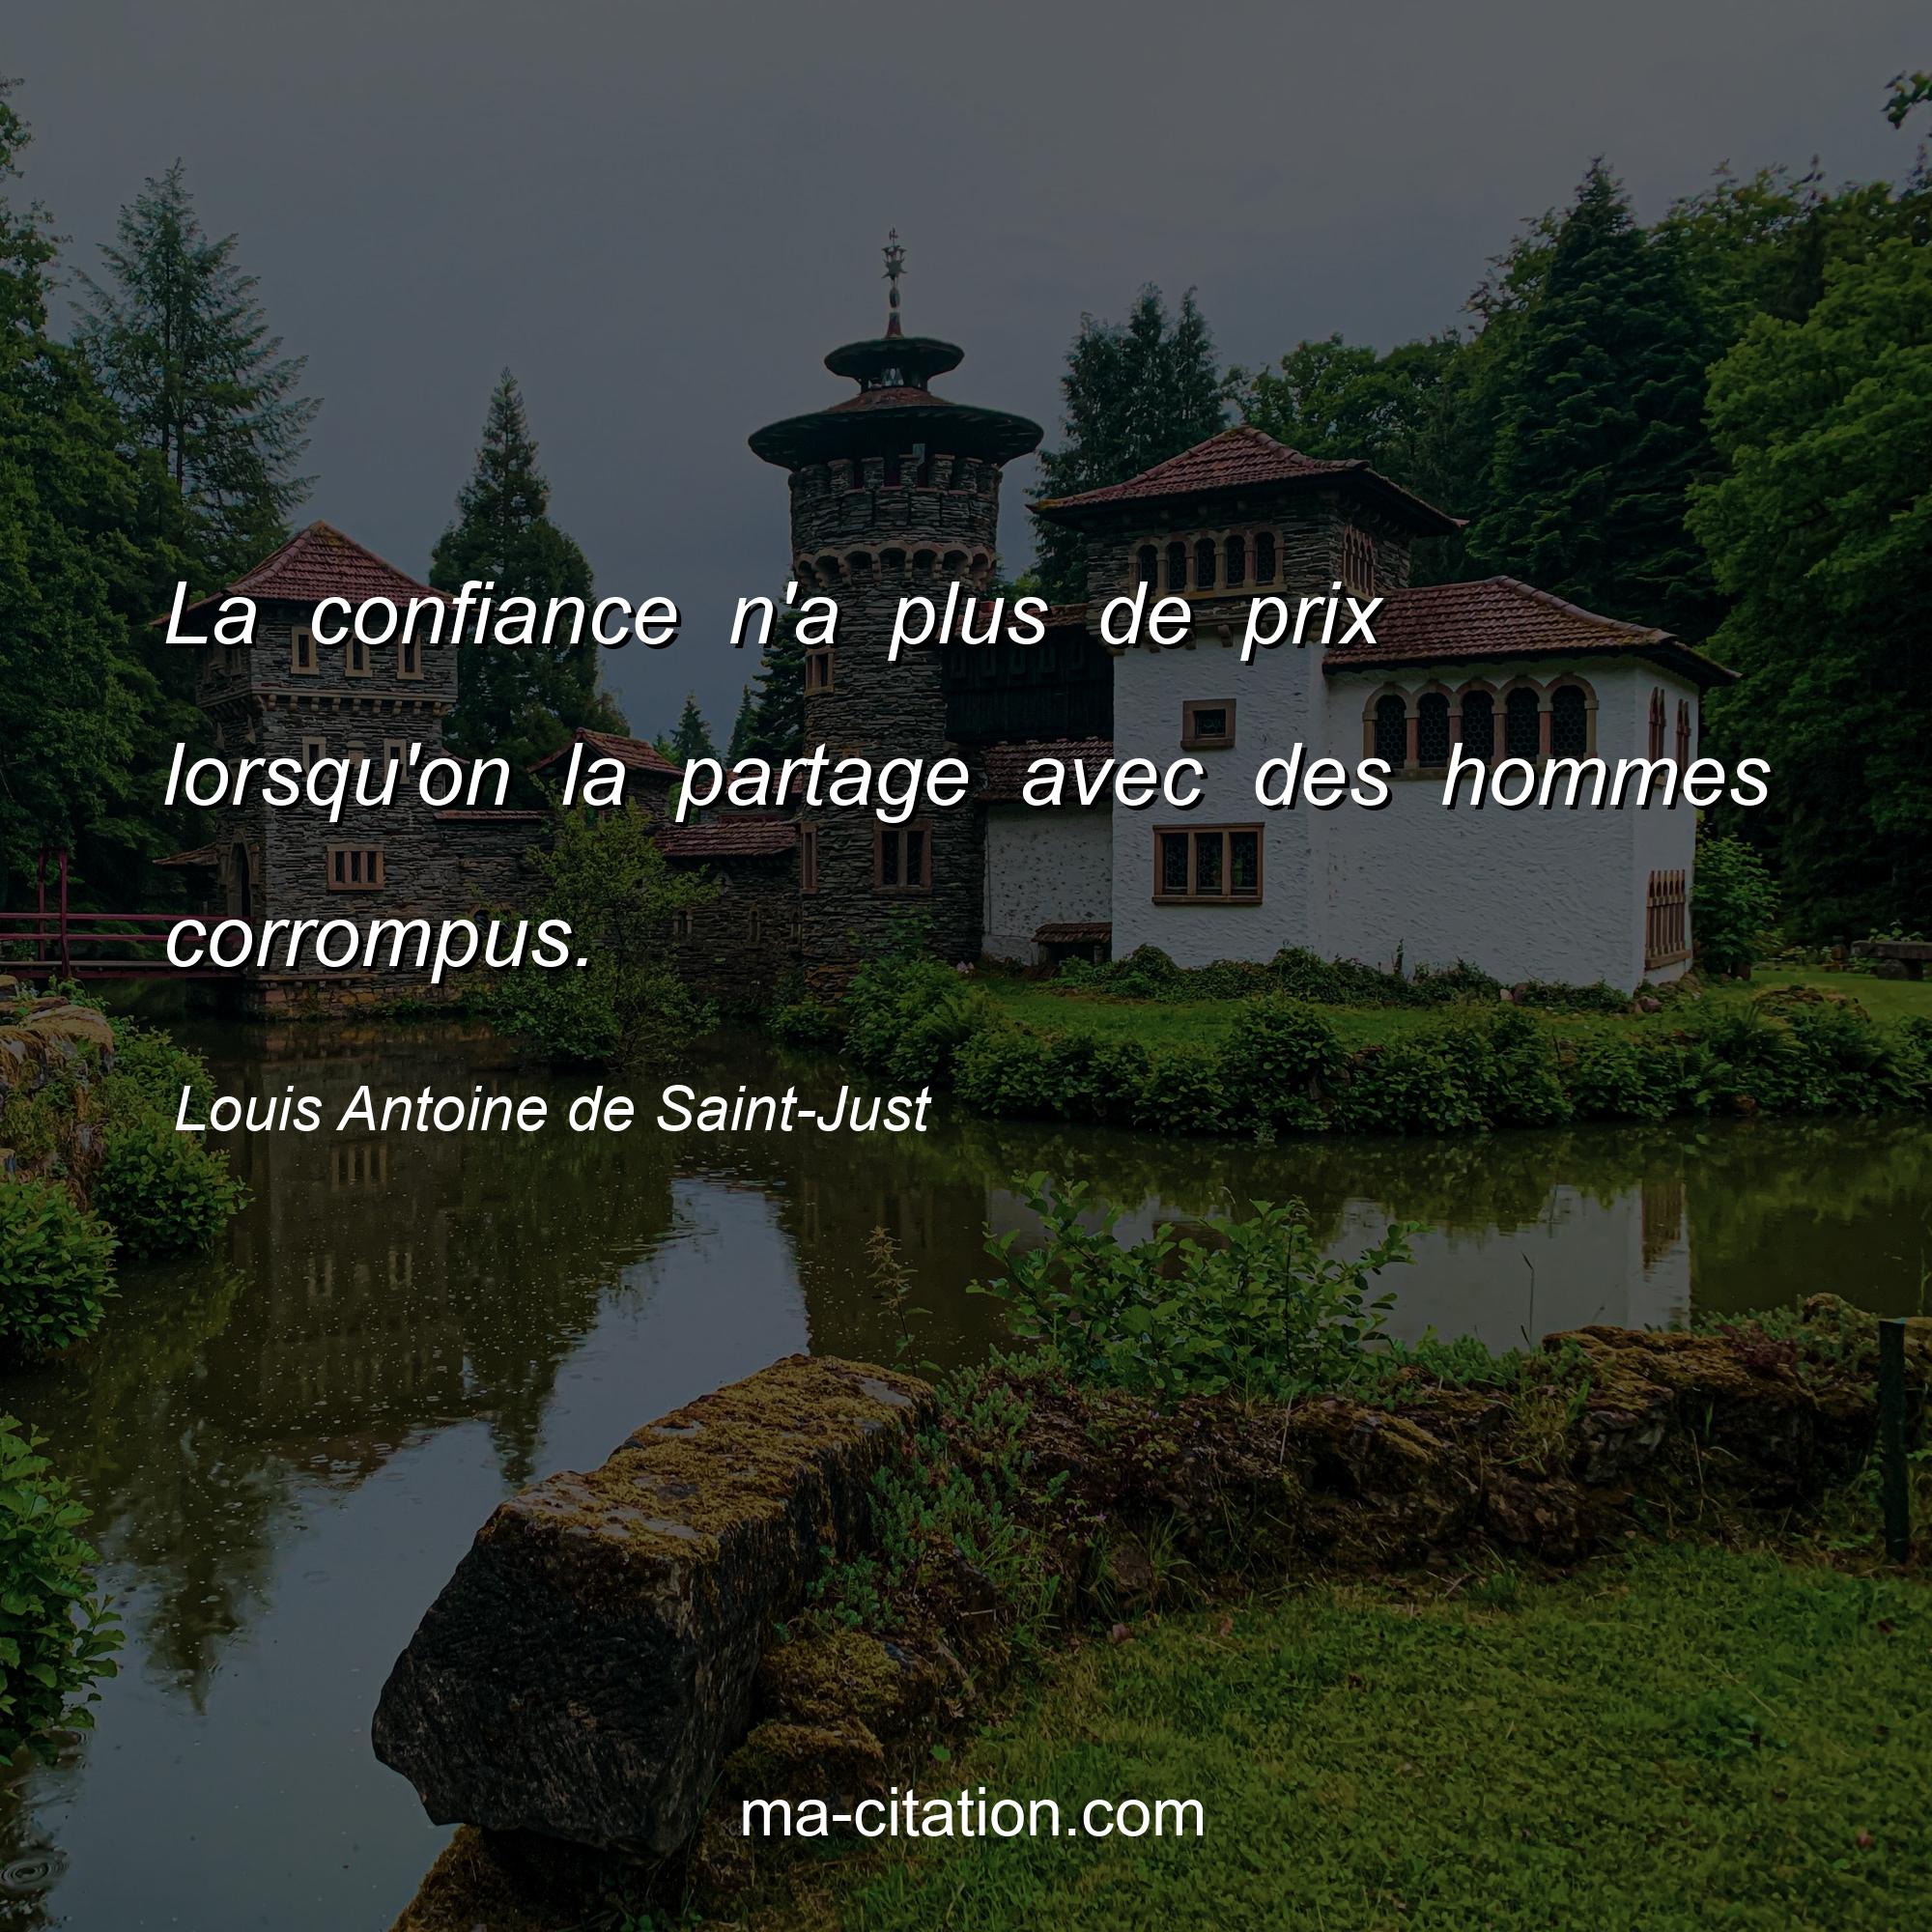 Louis Antoine de Saint-Just : La confiance n'a plus de prix lorsqu'on la partage avec des hommes corrompus.